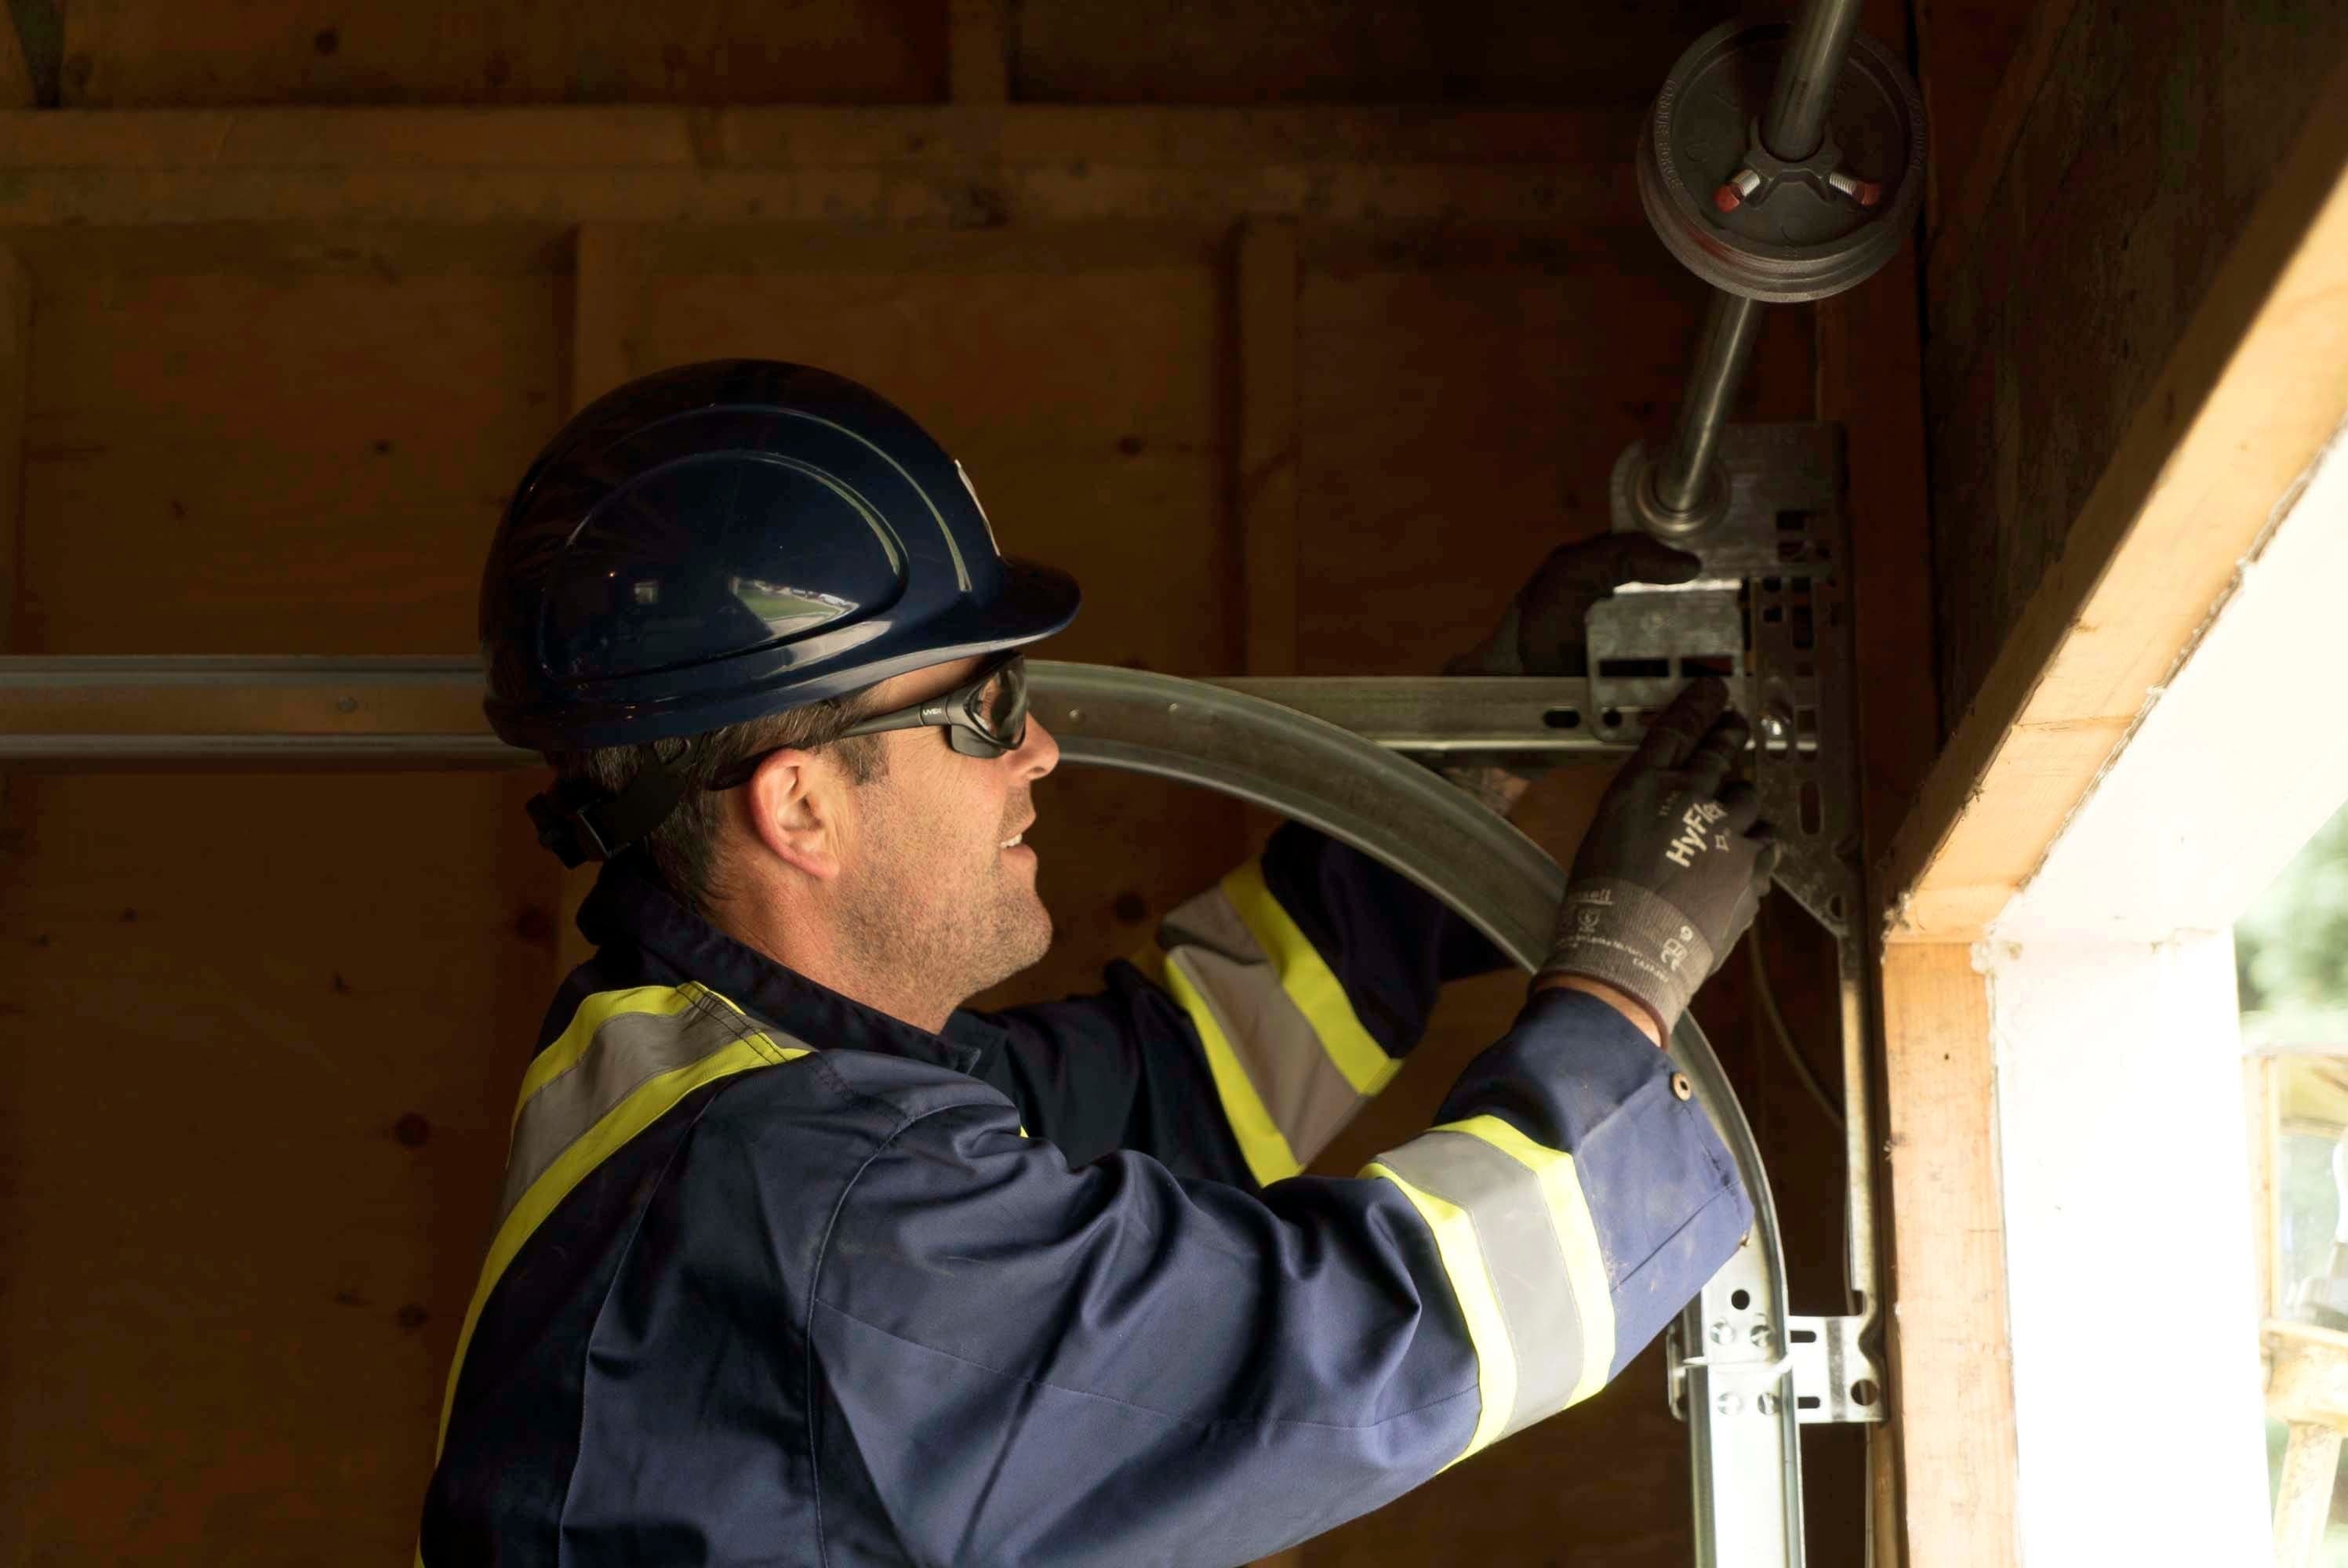 technician performing garage door residential service inspection